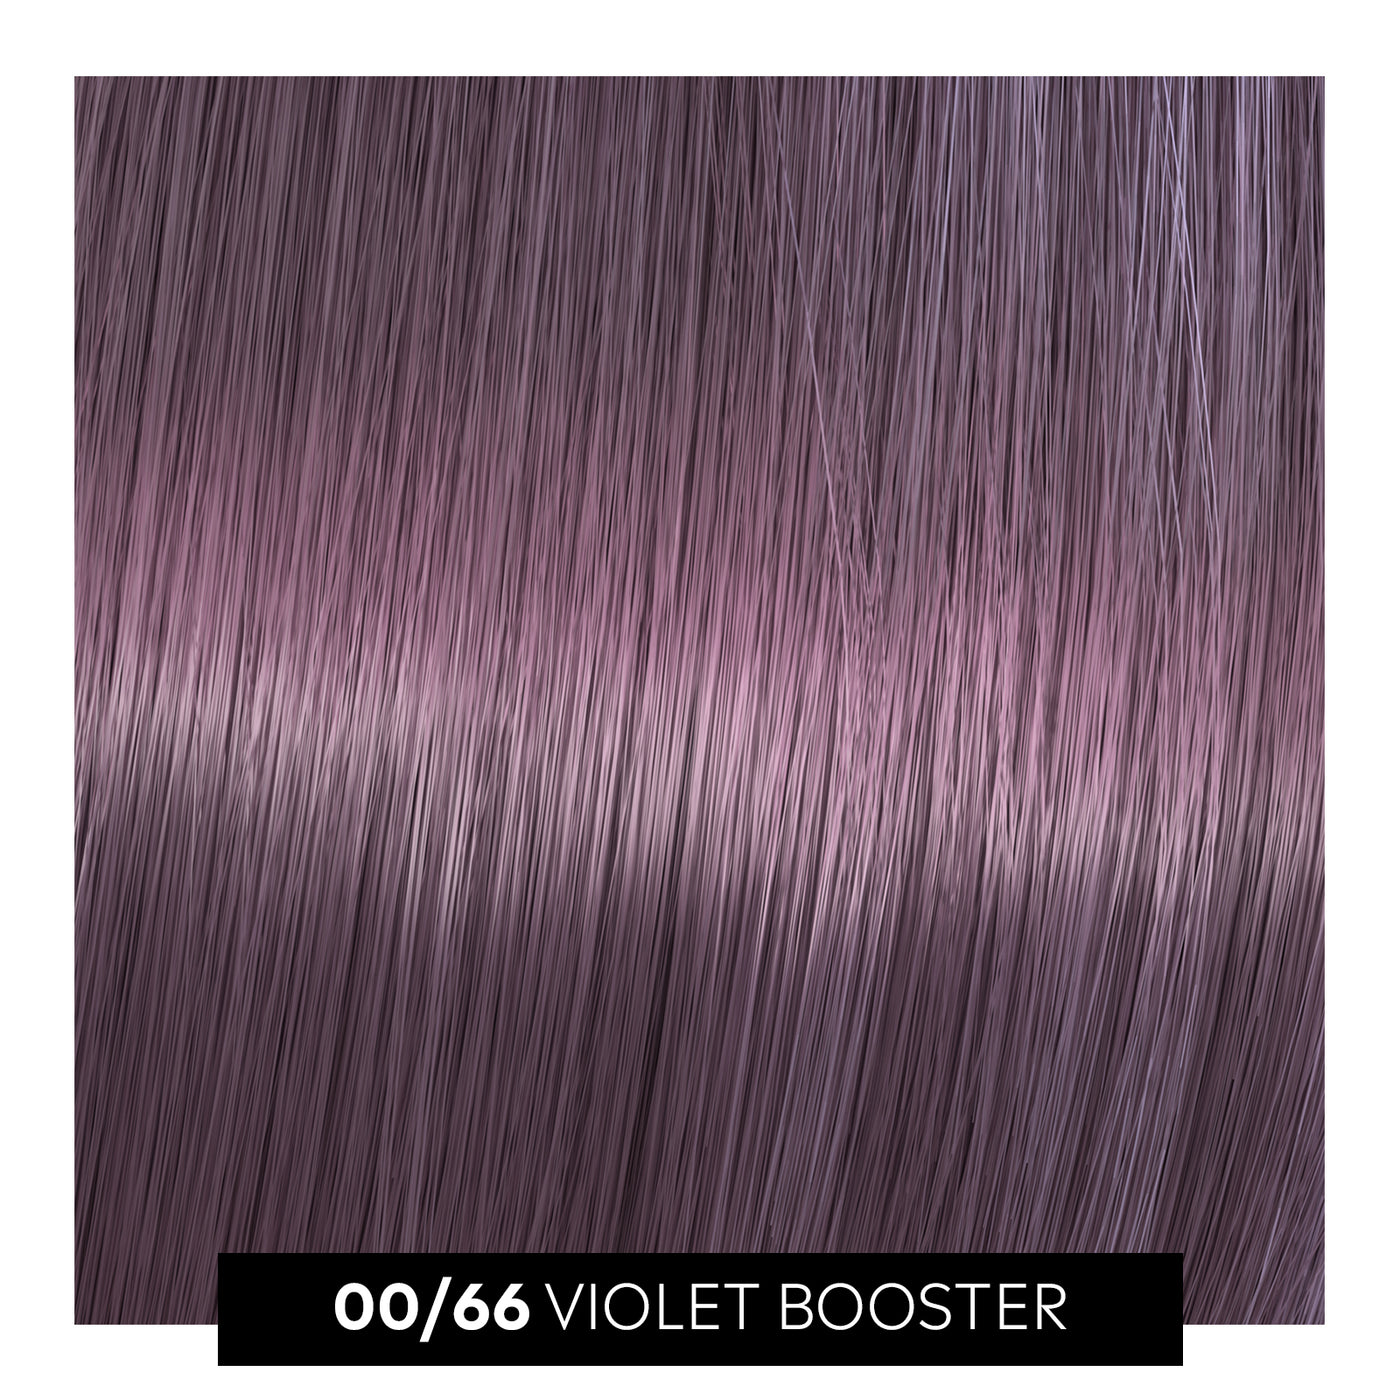 00/66 violet booster